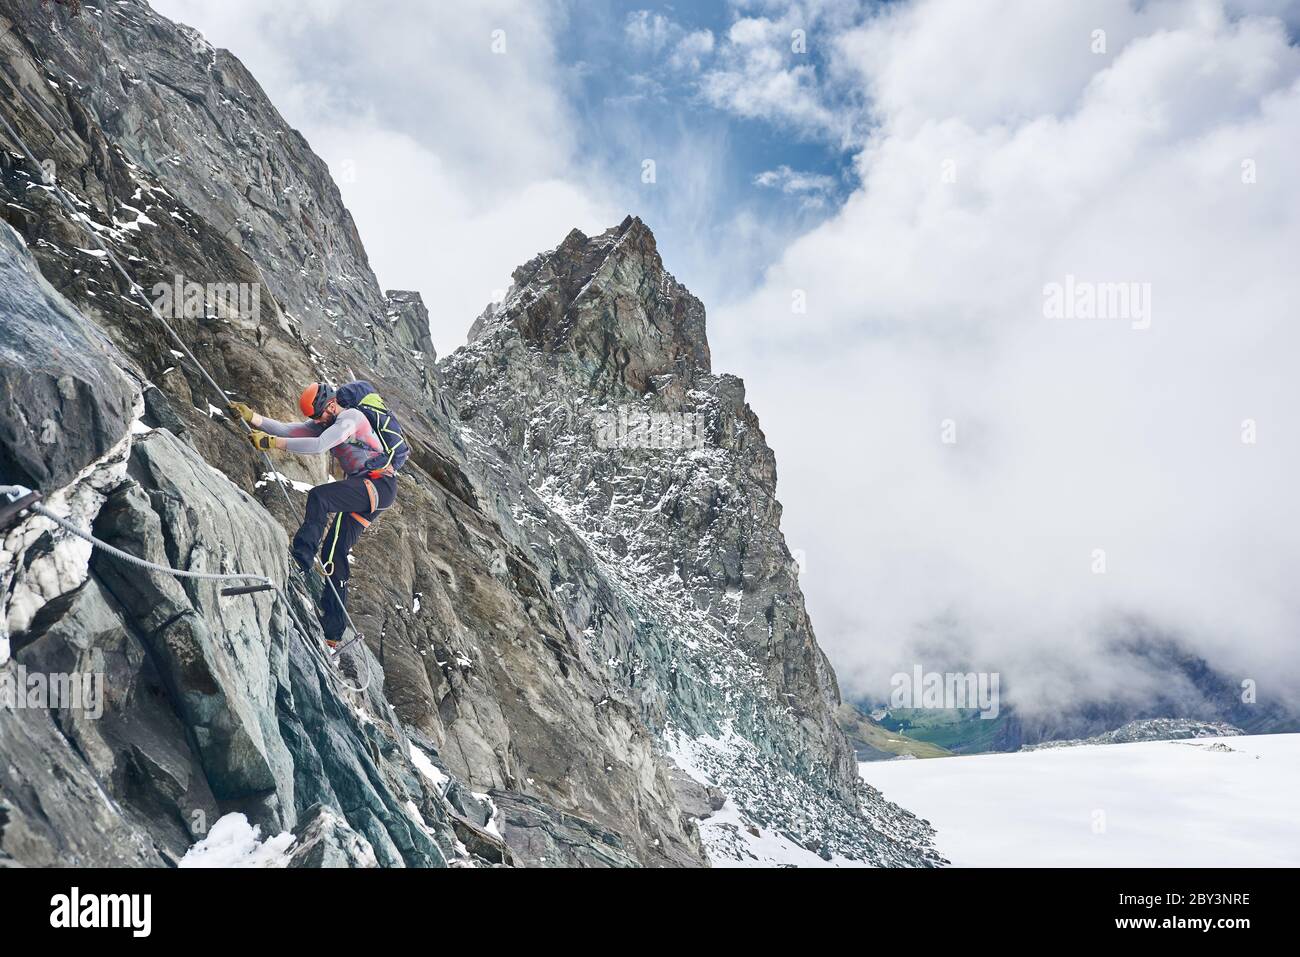 Scalatore in casco di sicurezza con corda fissa mentre sale montagna rocciosa. Alpinista maschile con formazione naturale di roccia di arrampicata zaino. Concetto di alpinismo e alpinismo invernale. Foto Stock